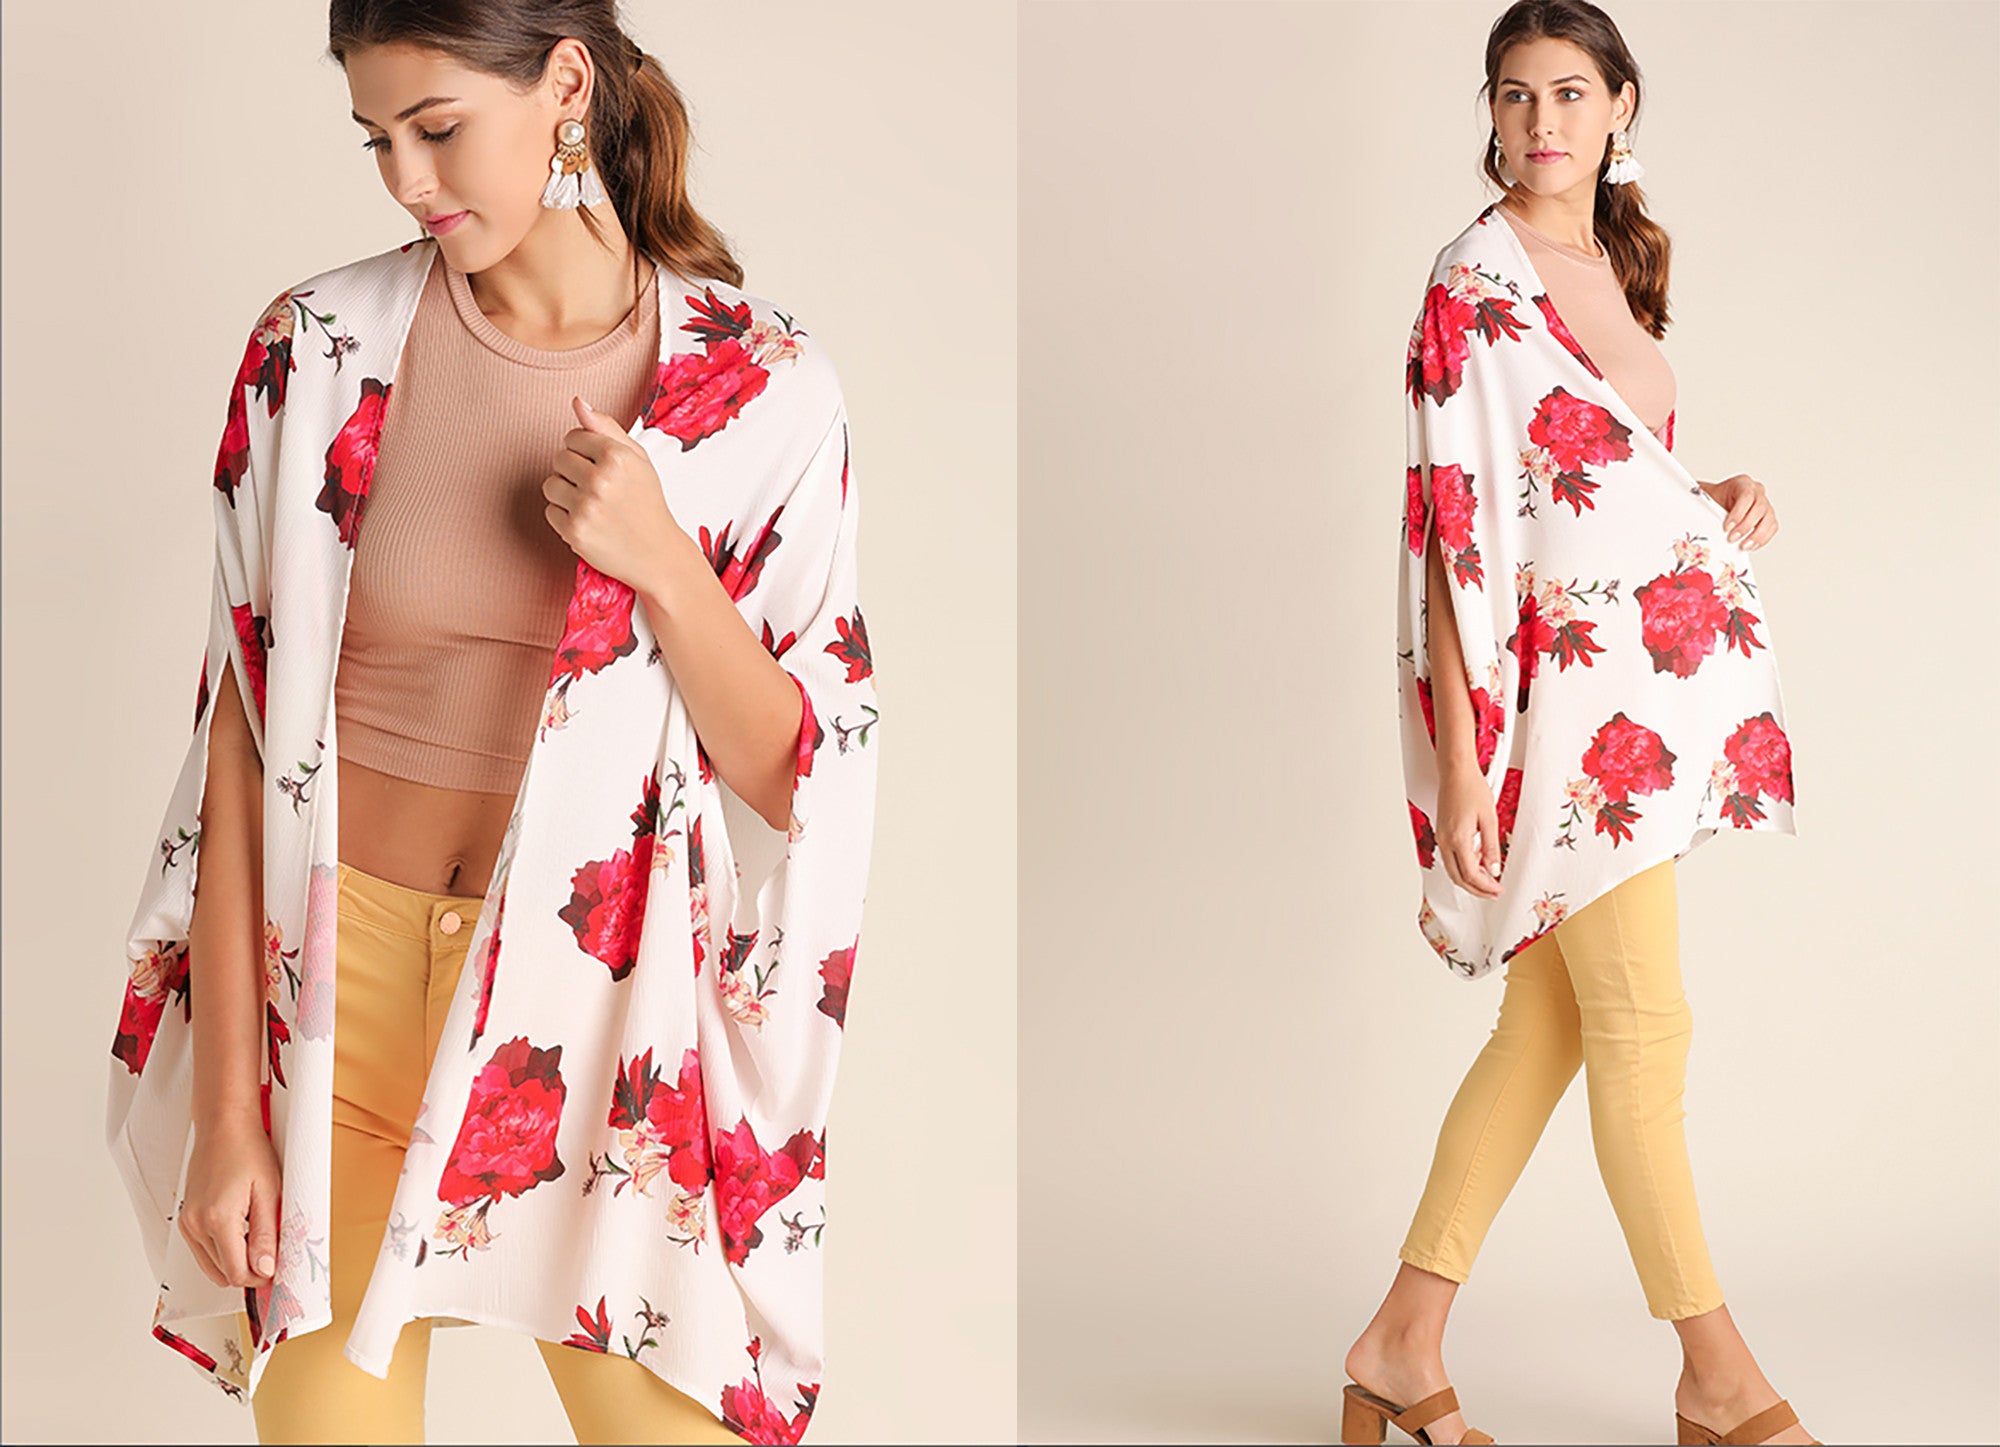 Women's floral print kimono at Eccentrics Boutique. Affordable women's clothing boutique.